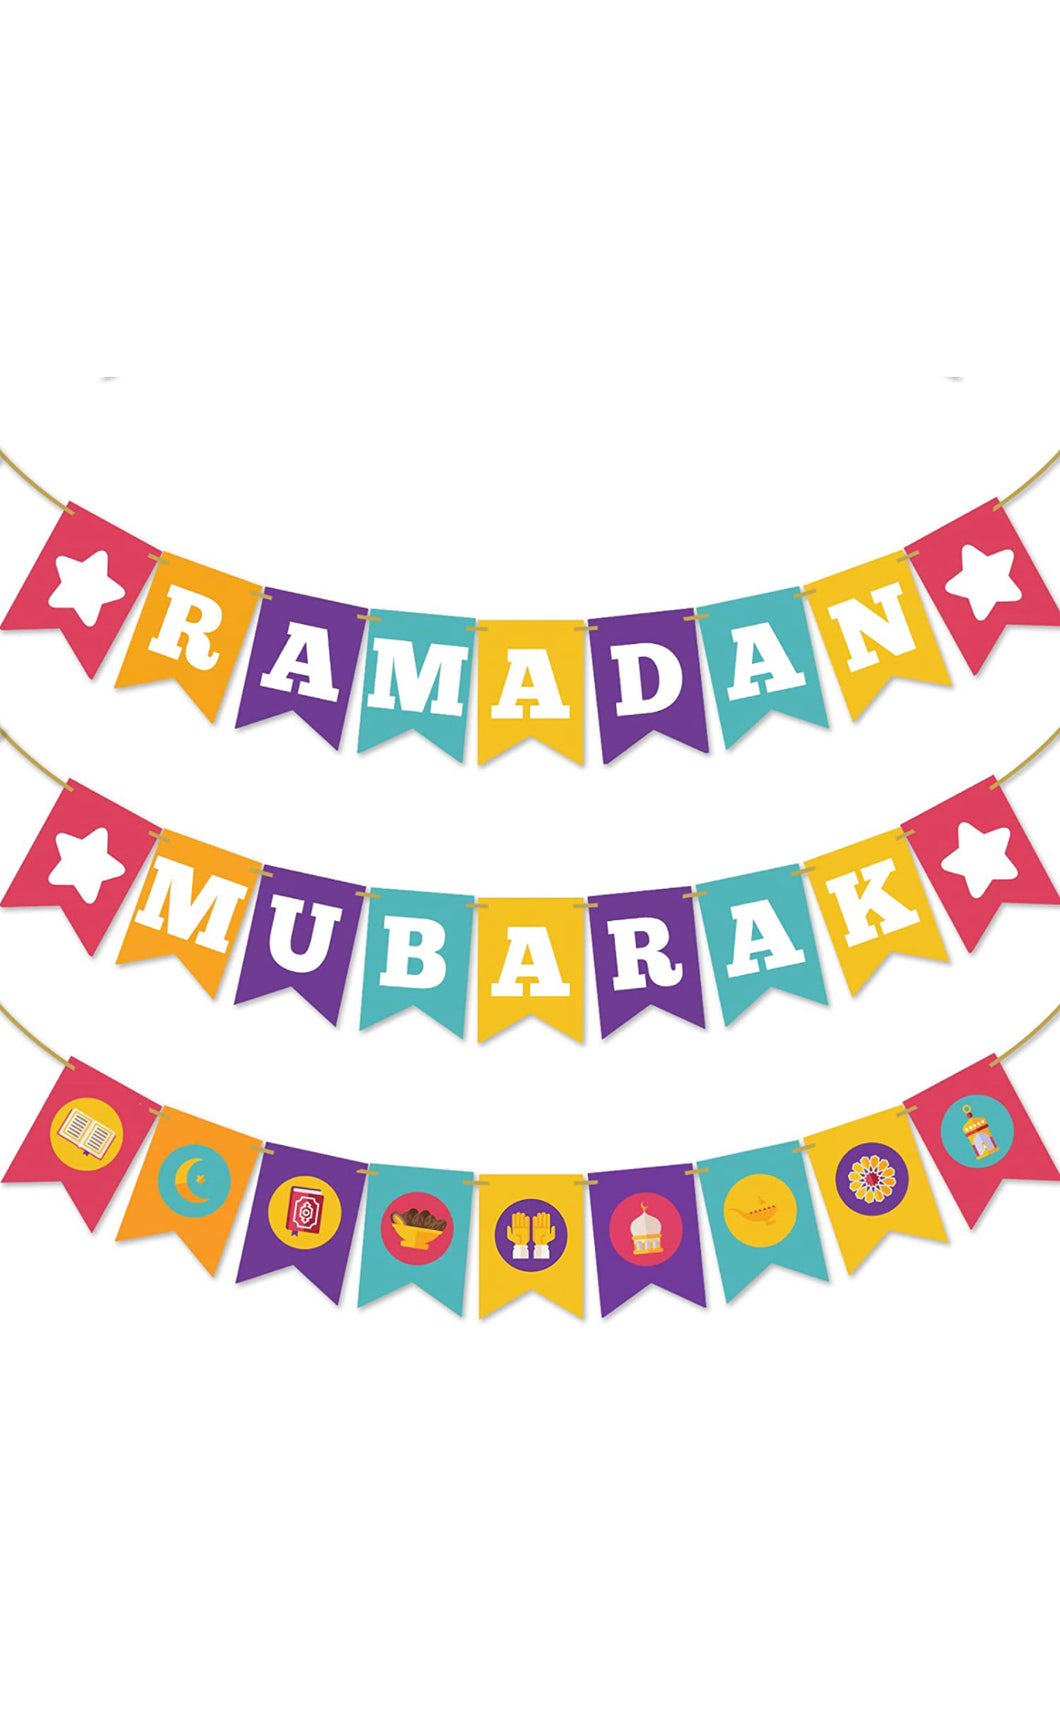 Classroom Ramadan Banner